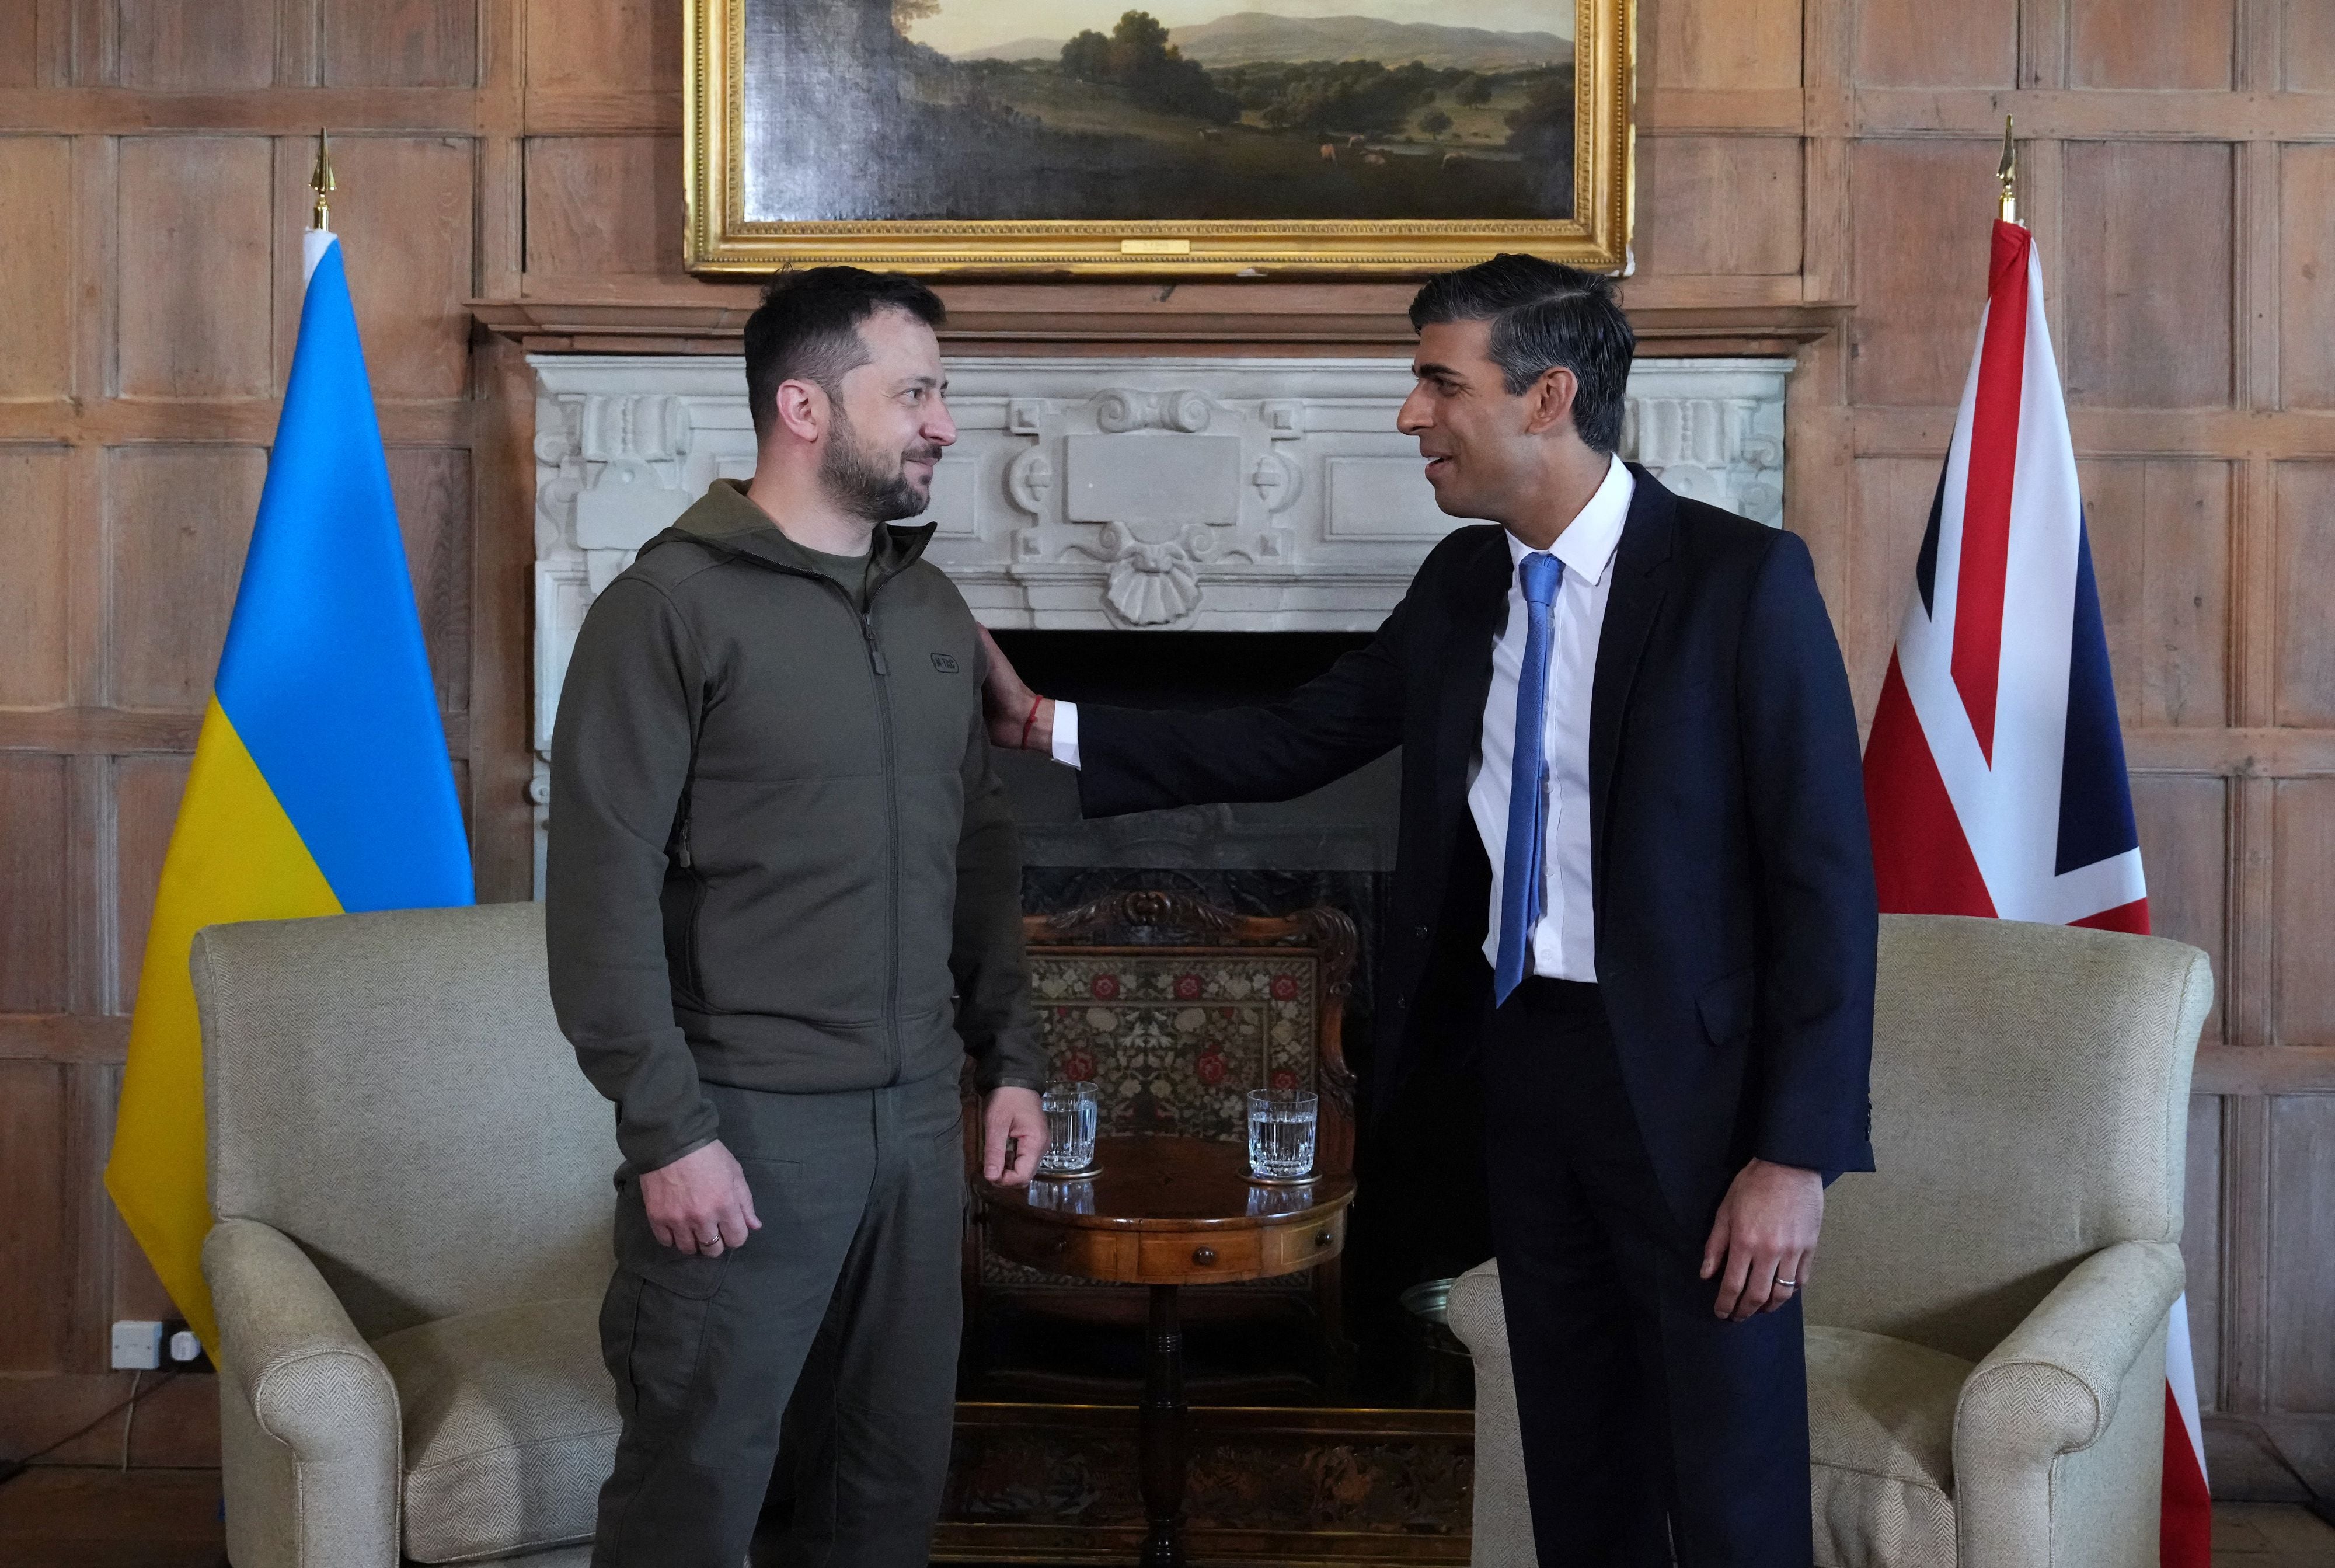 El primer ministro británico, Rishi Sunak (derecha), conversa con el presidente de Ucrania, Volodymyr Zelensky, antes de una reunión bilateral en Chequers, la residencia oficial del primer ministro, cerca de Ellesborough, al noroeste de Londres.